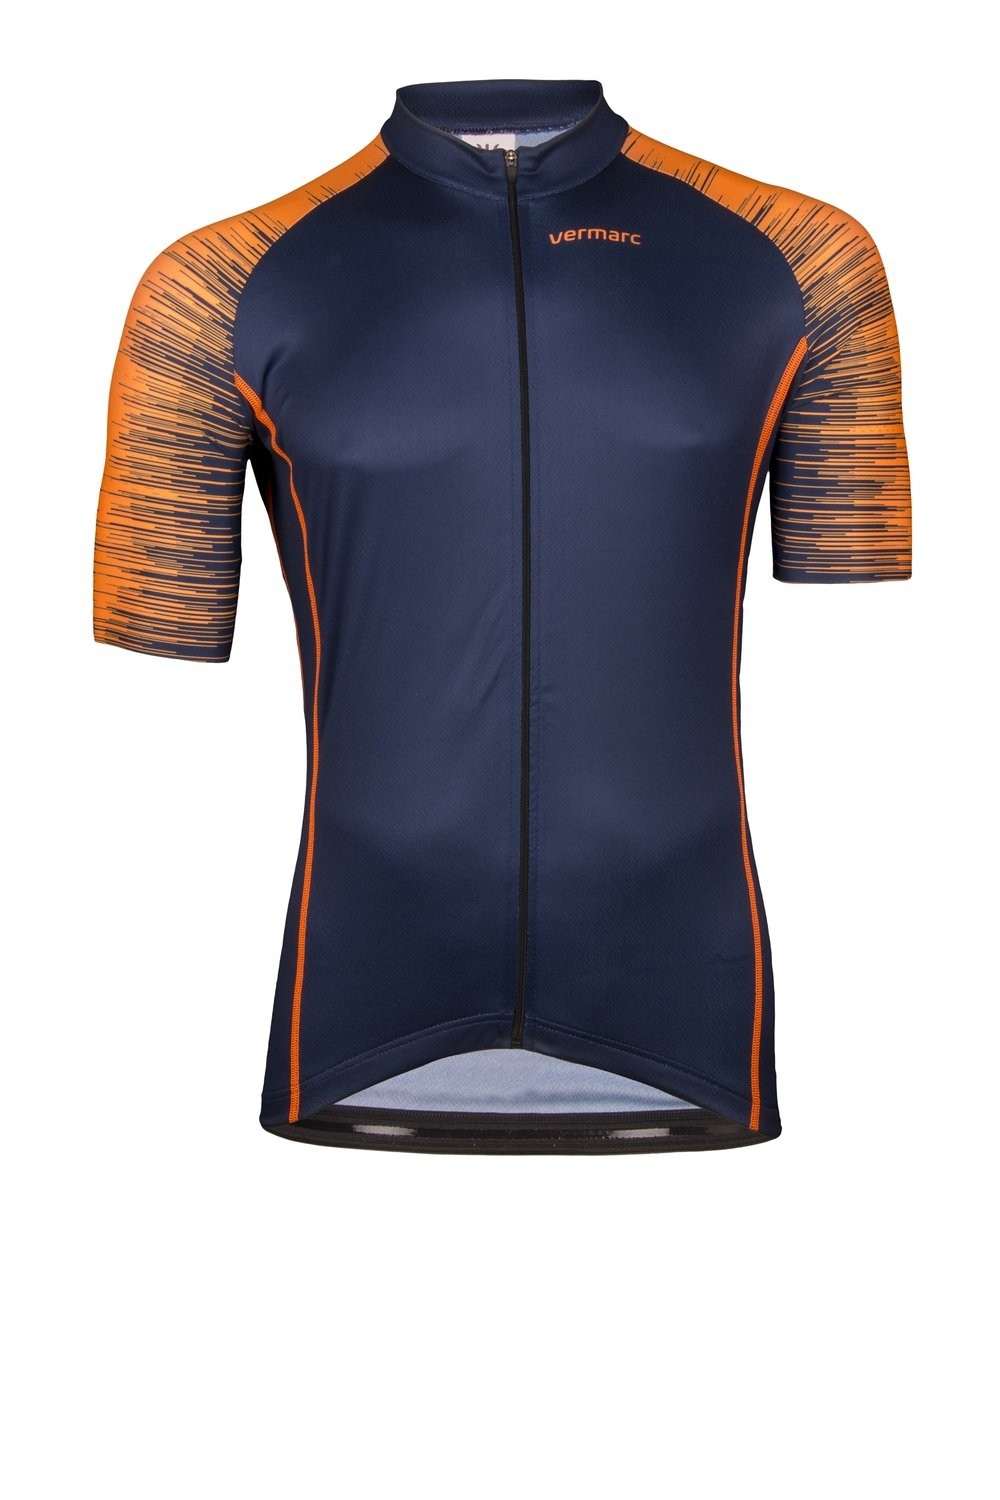 Vermarc seiso sp.l aero maillot de cyclisme manches courtes navy bleu fluo orange